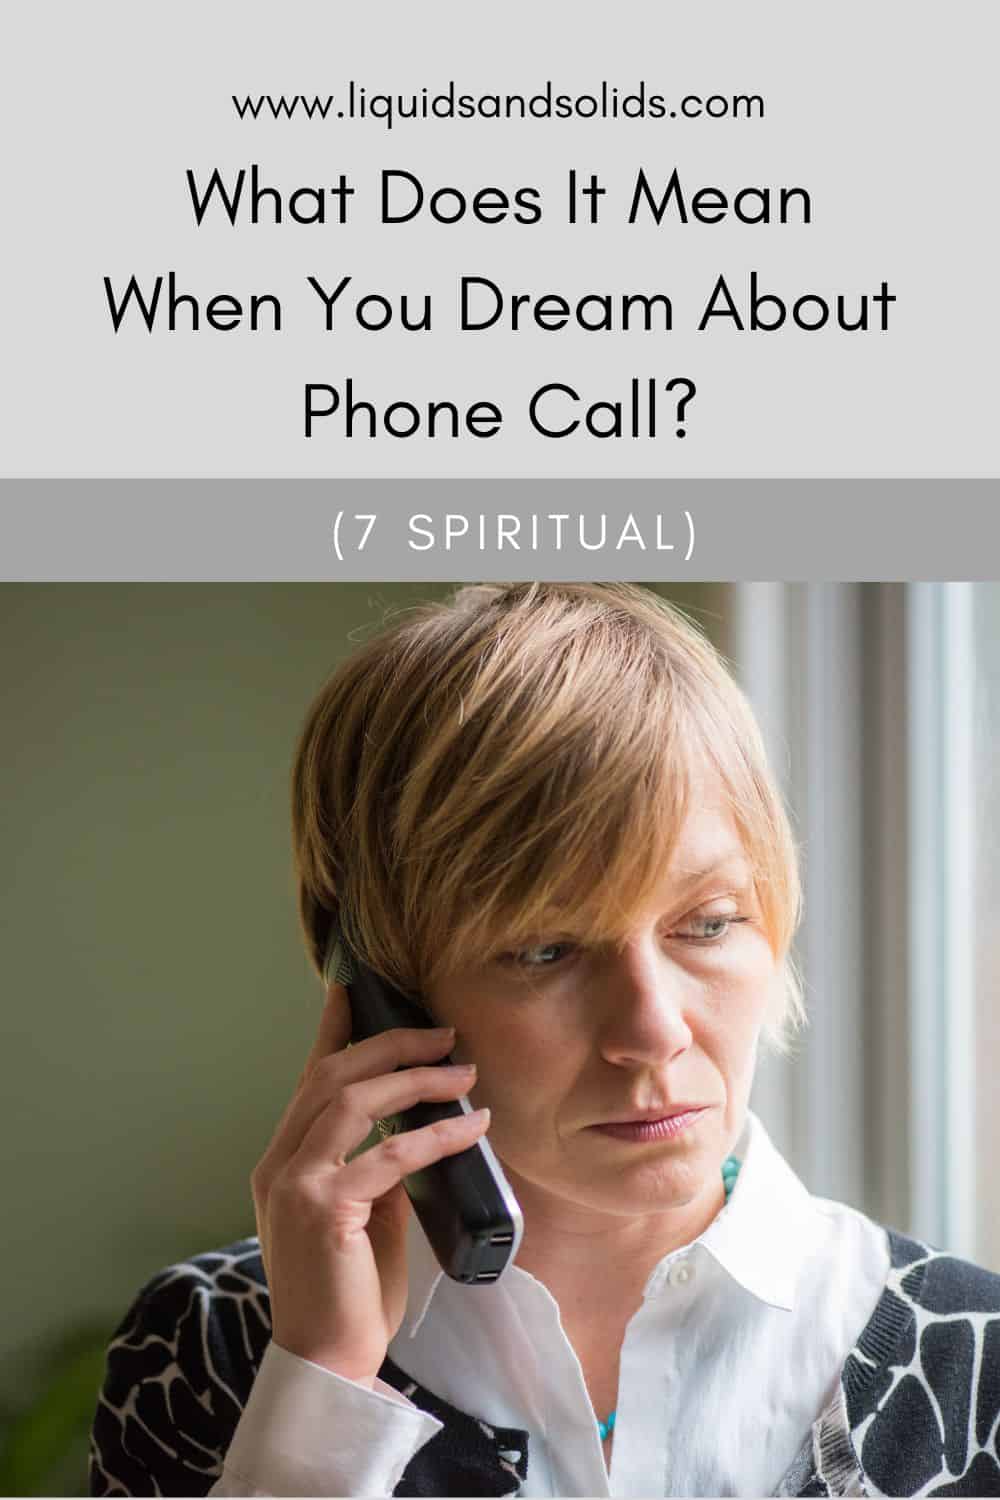  ოცნებობთ სატელეფონო ზარზე? (7 სულიერი მნიშვნელობა)